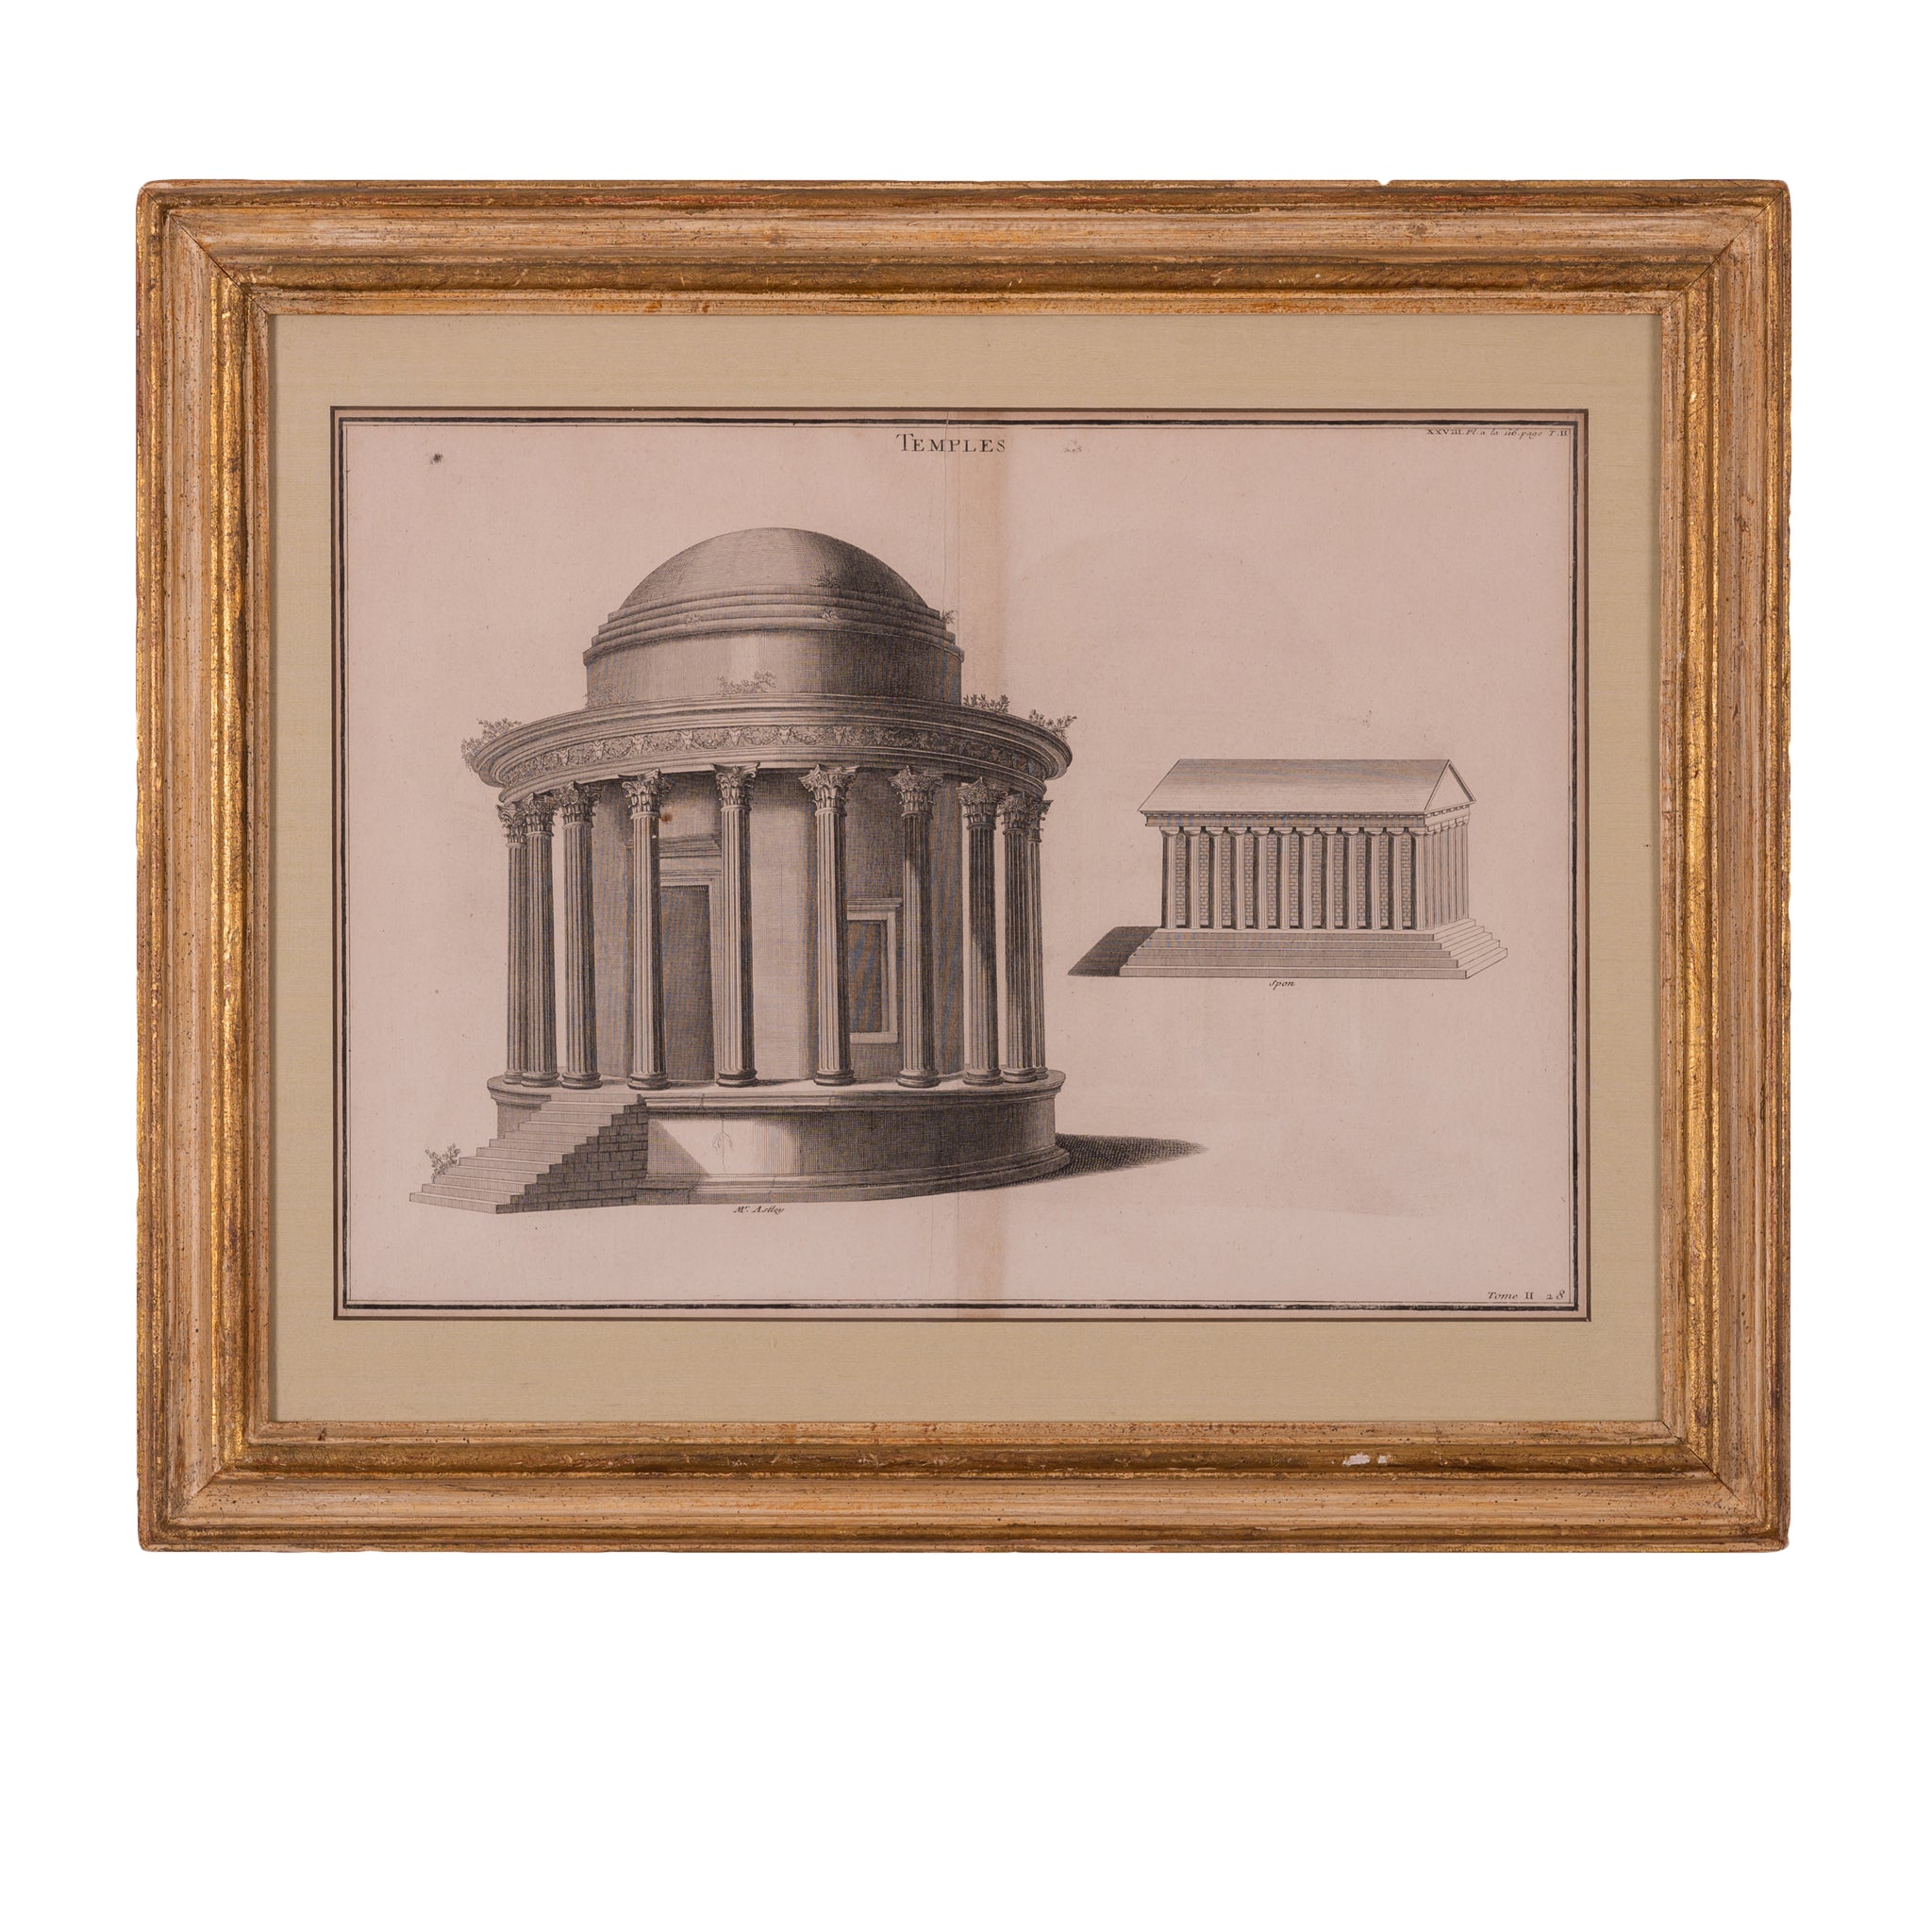 Bernard de Montfaucon - Roman Temple Engravings, Nimes, France